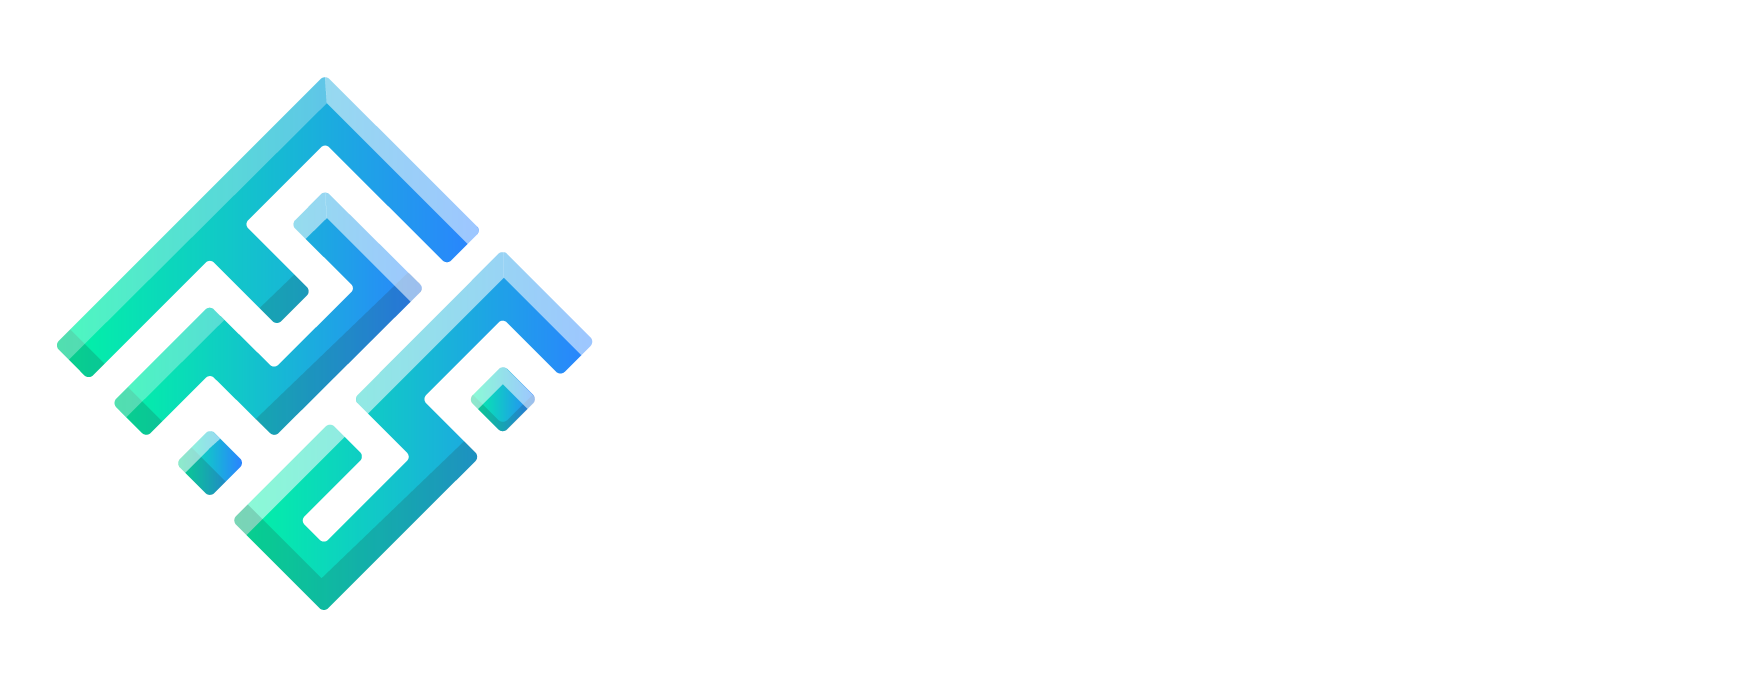 fps_footer_logo